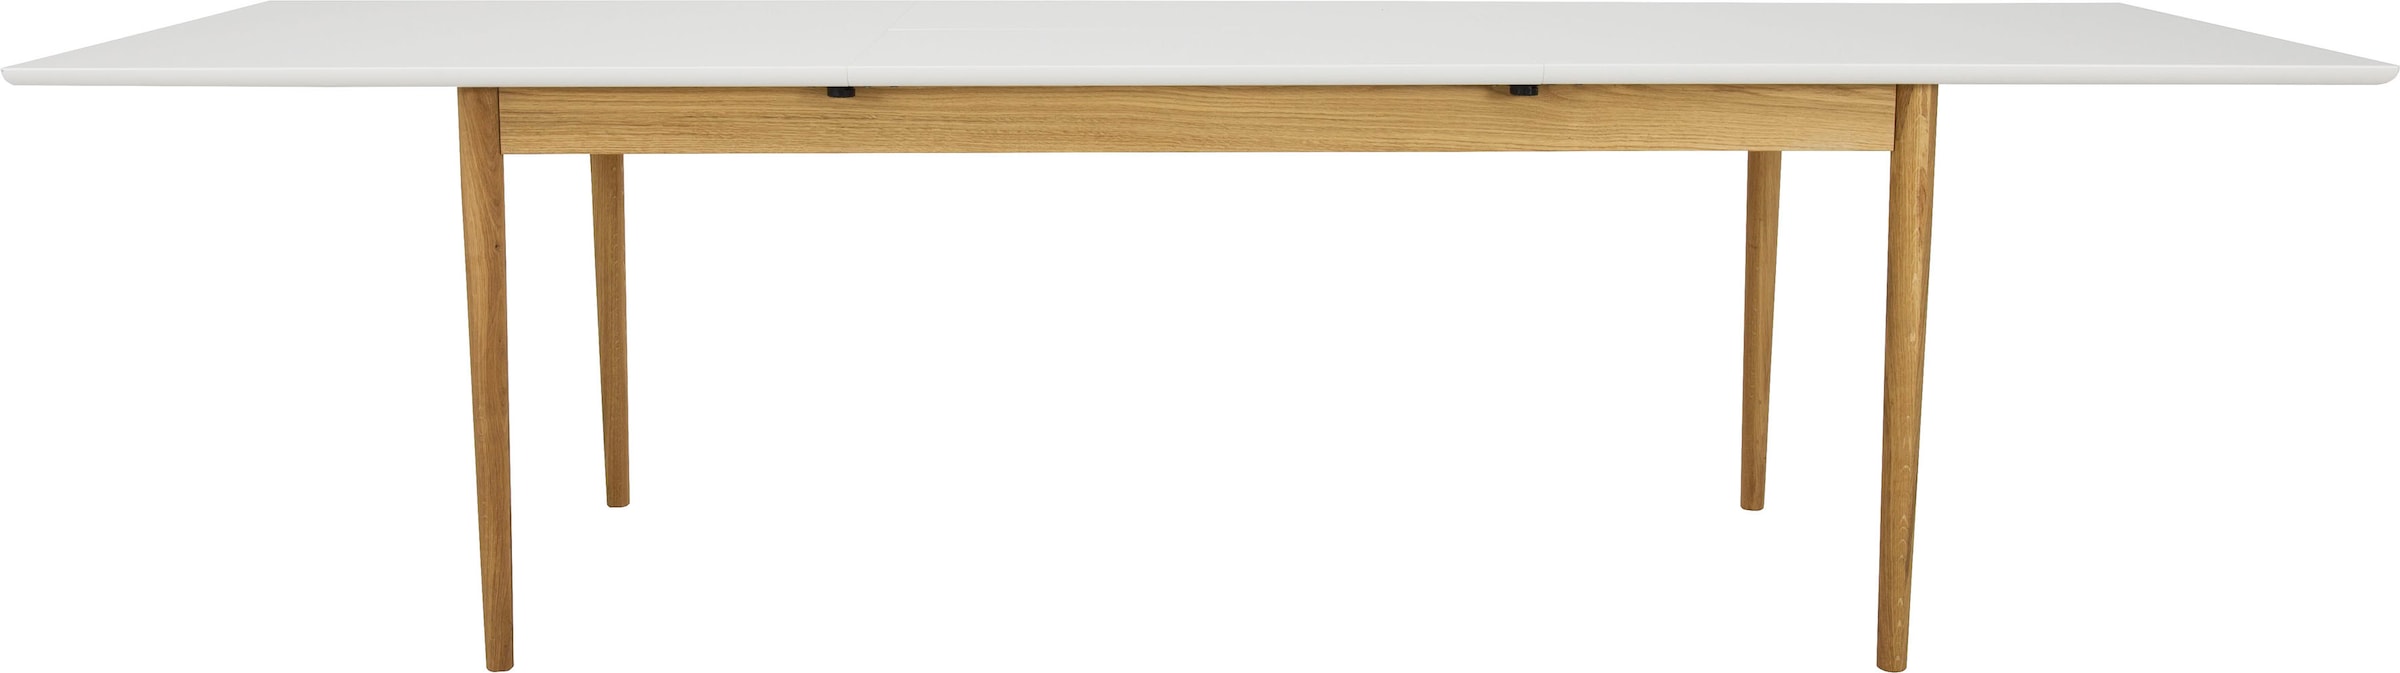 Tenzo Esstisch »SVEA«, mit Ausziehfunktion, Design von Tenzo Design studio, Breite 195/275 cm